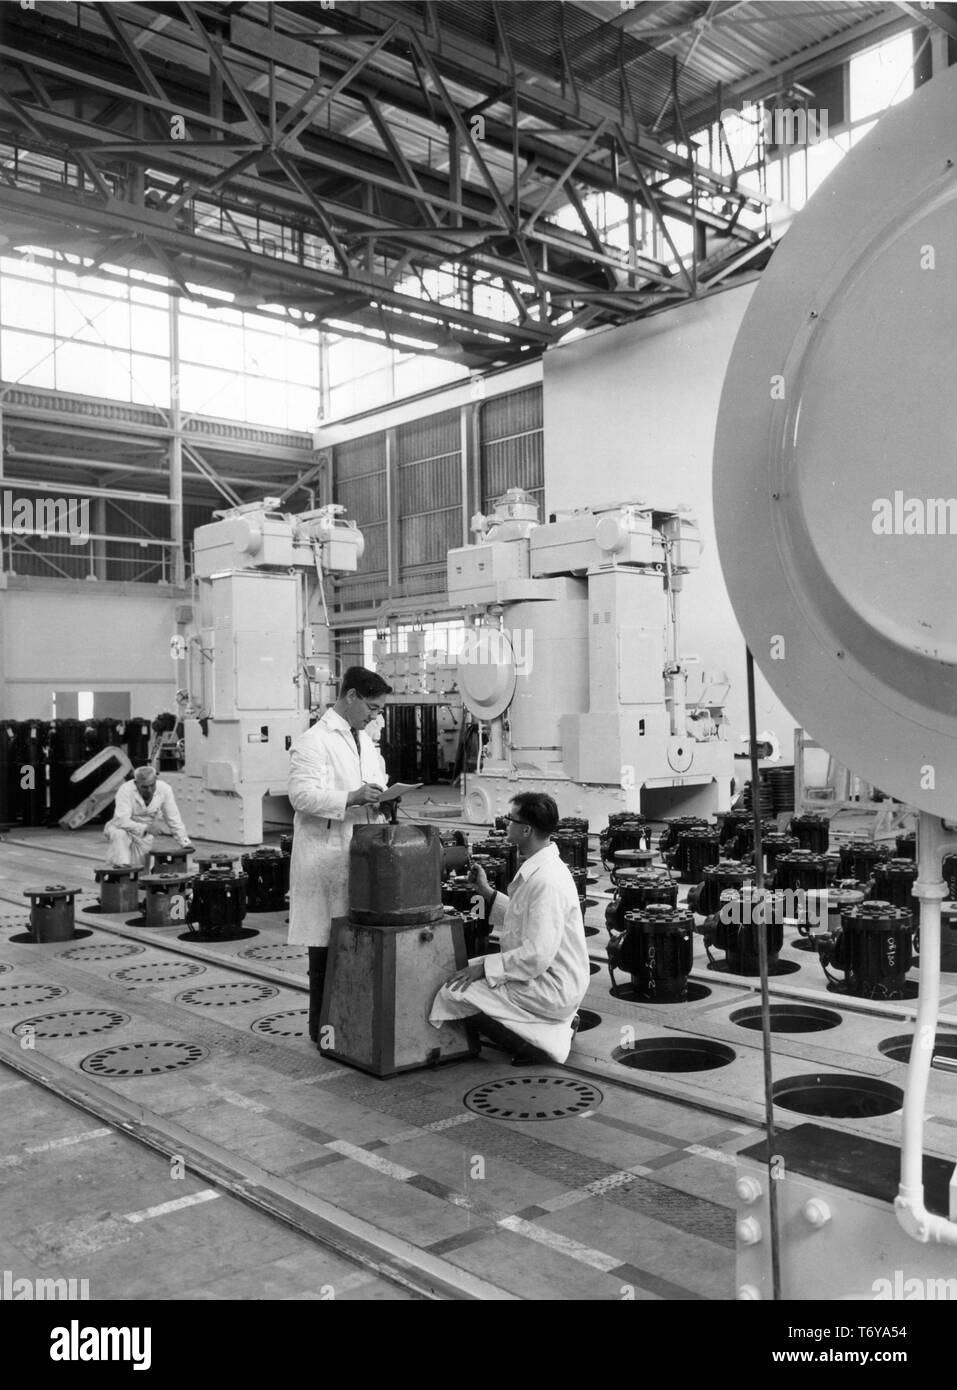 Calder Hall Mitarbeiter Anthony Bauer und James Kearney messen Neutronenfluss auf der Laden - Entladen Deck der Reaktor Nummer 1, Calder Hall Atomkraftwerk Sellafield, Großbritannien, 1956. Mit freundlicher Genehmigung des US-Ministeriums für Energie. () Stockfoto